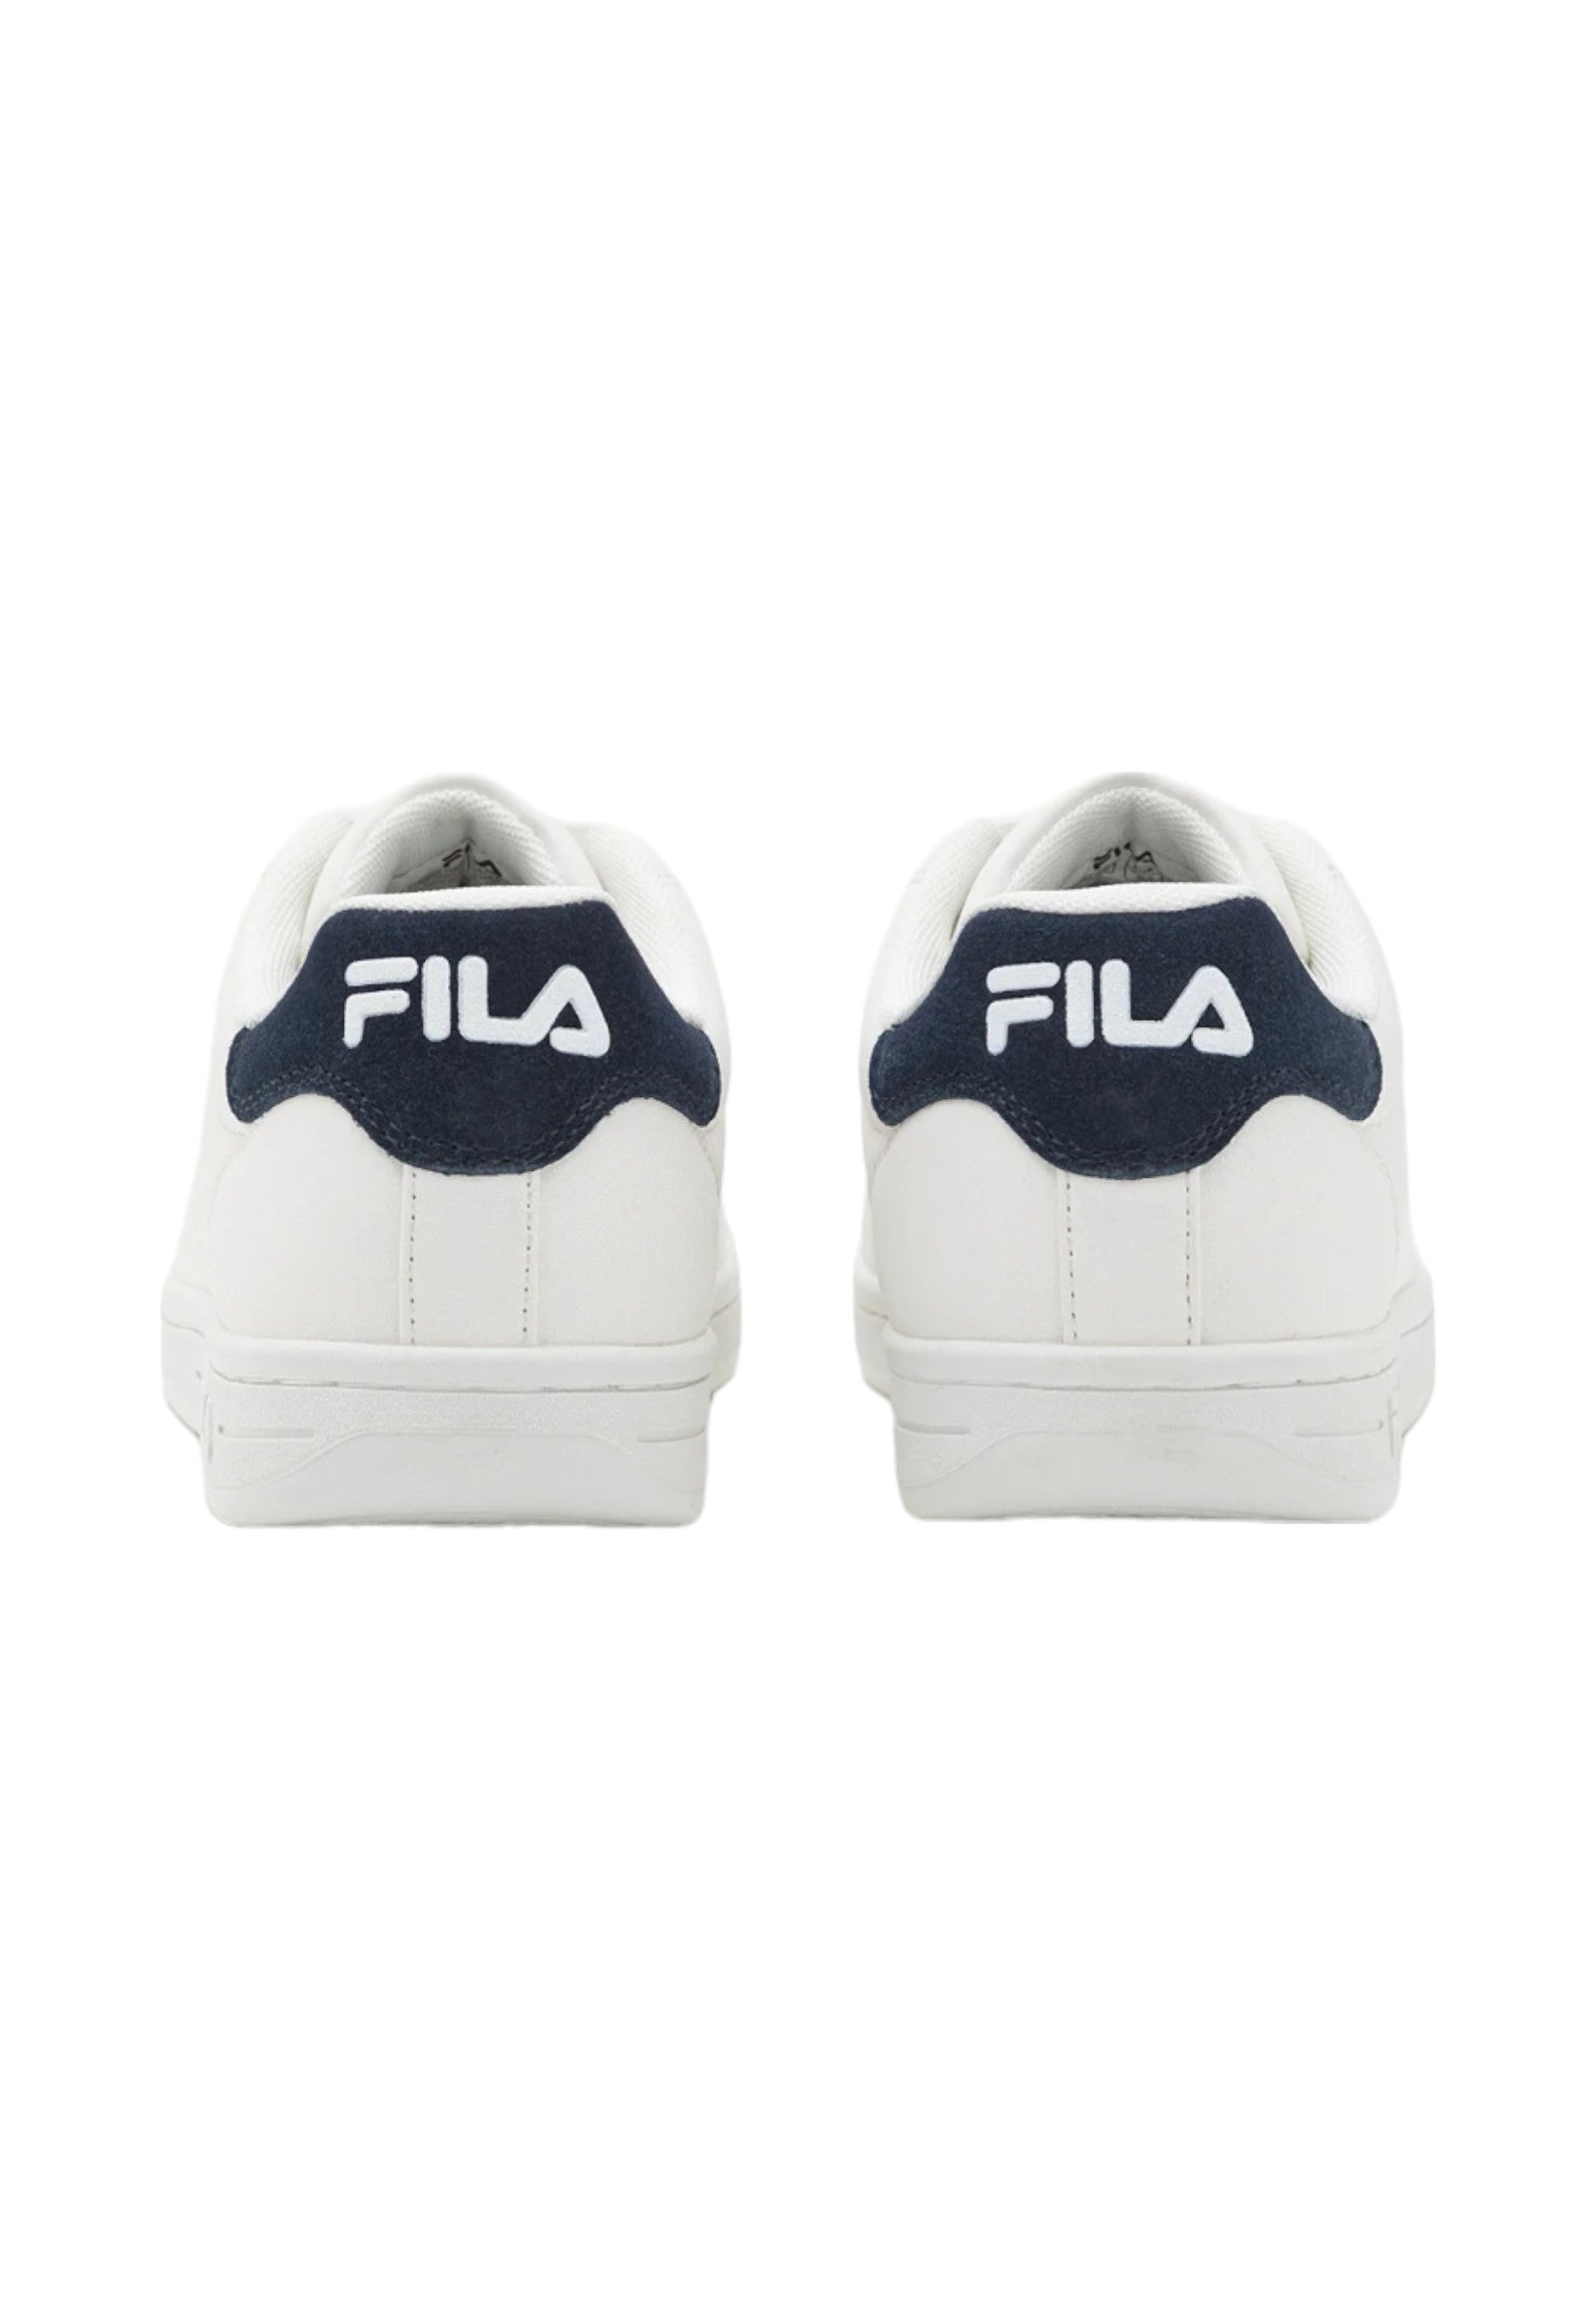 Fila Sneakers Ffm0002 White, Dress Blues